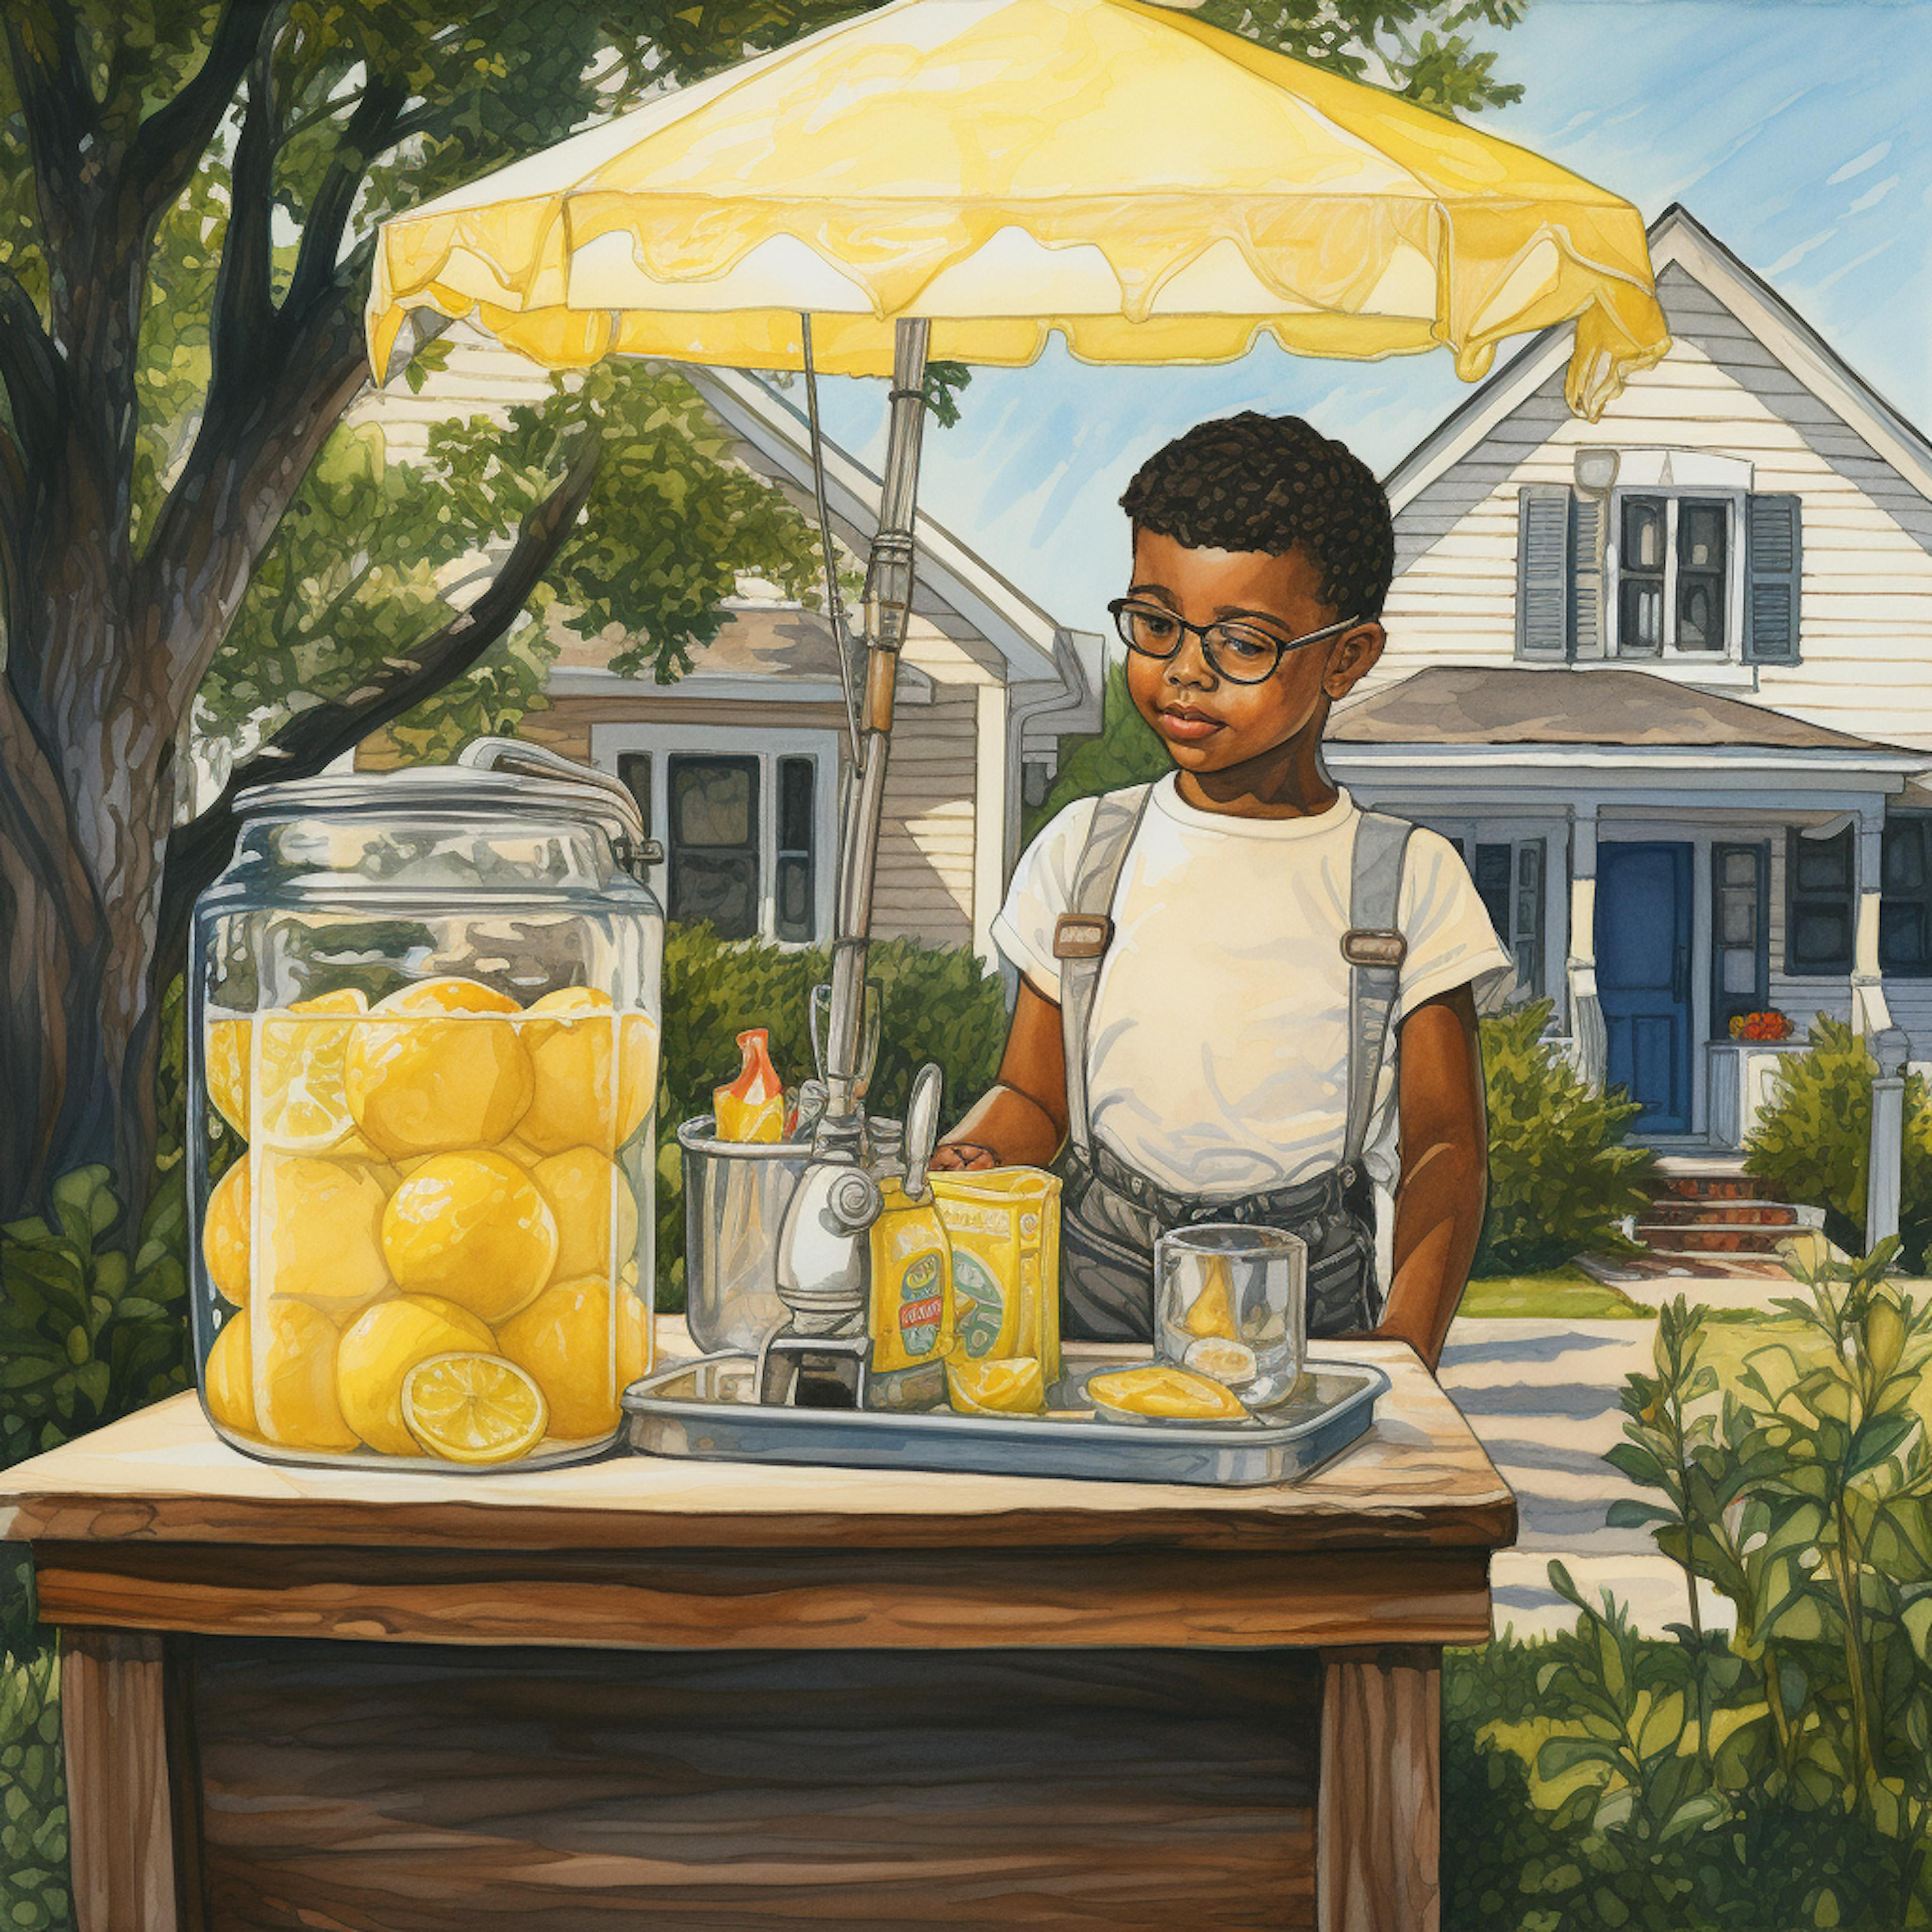 A boy at his lemonade stand